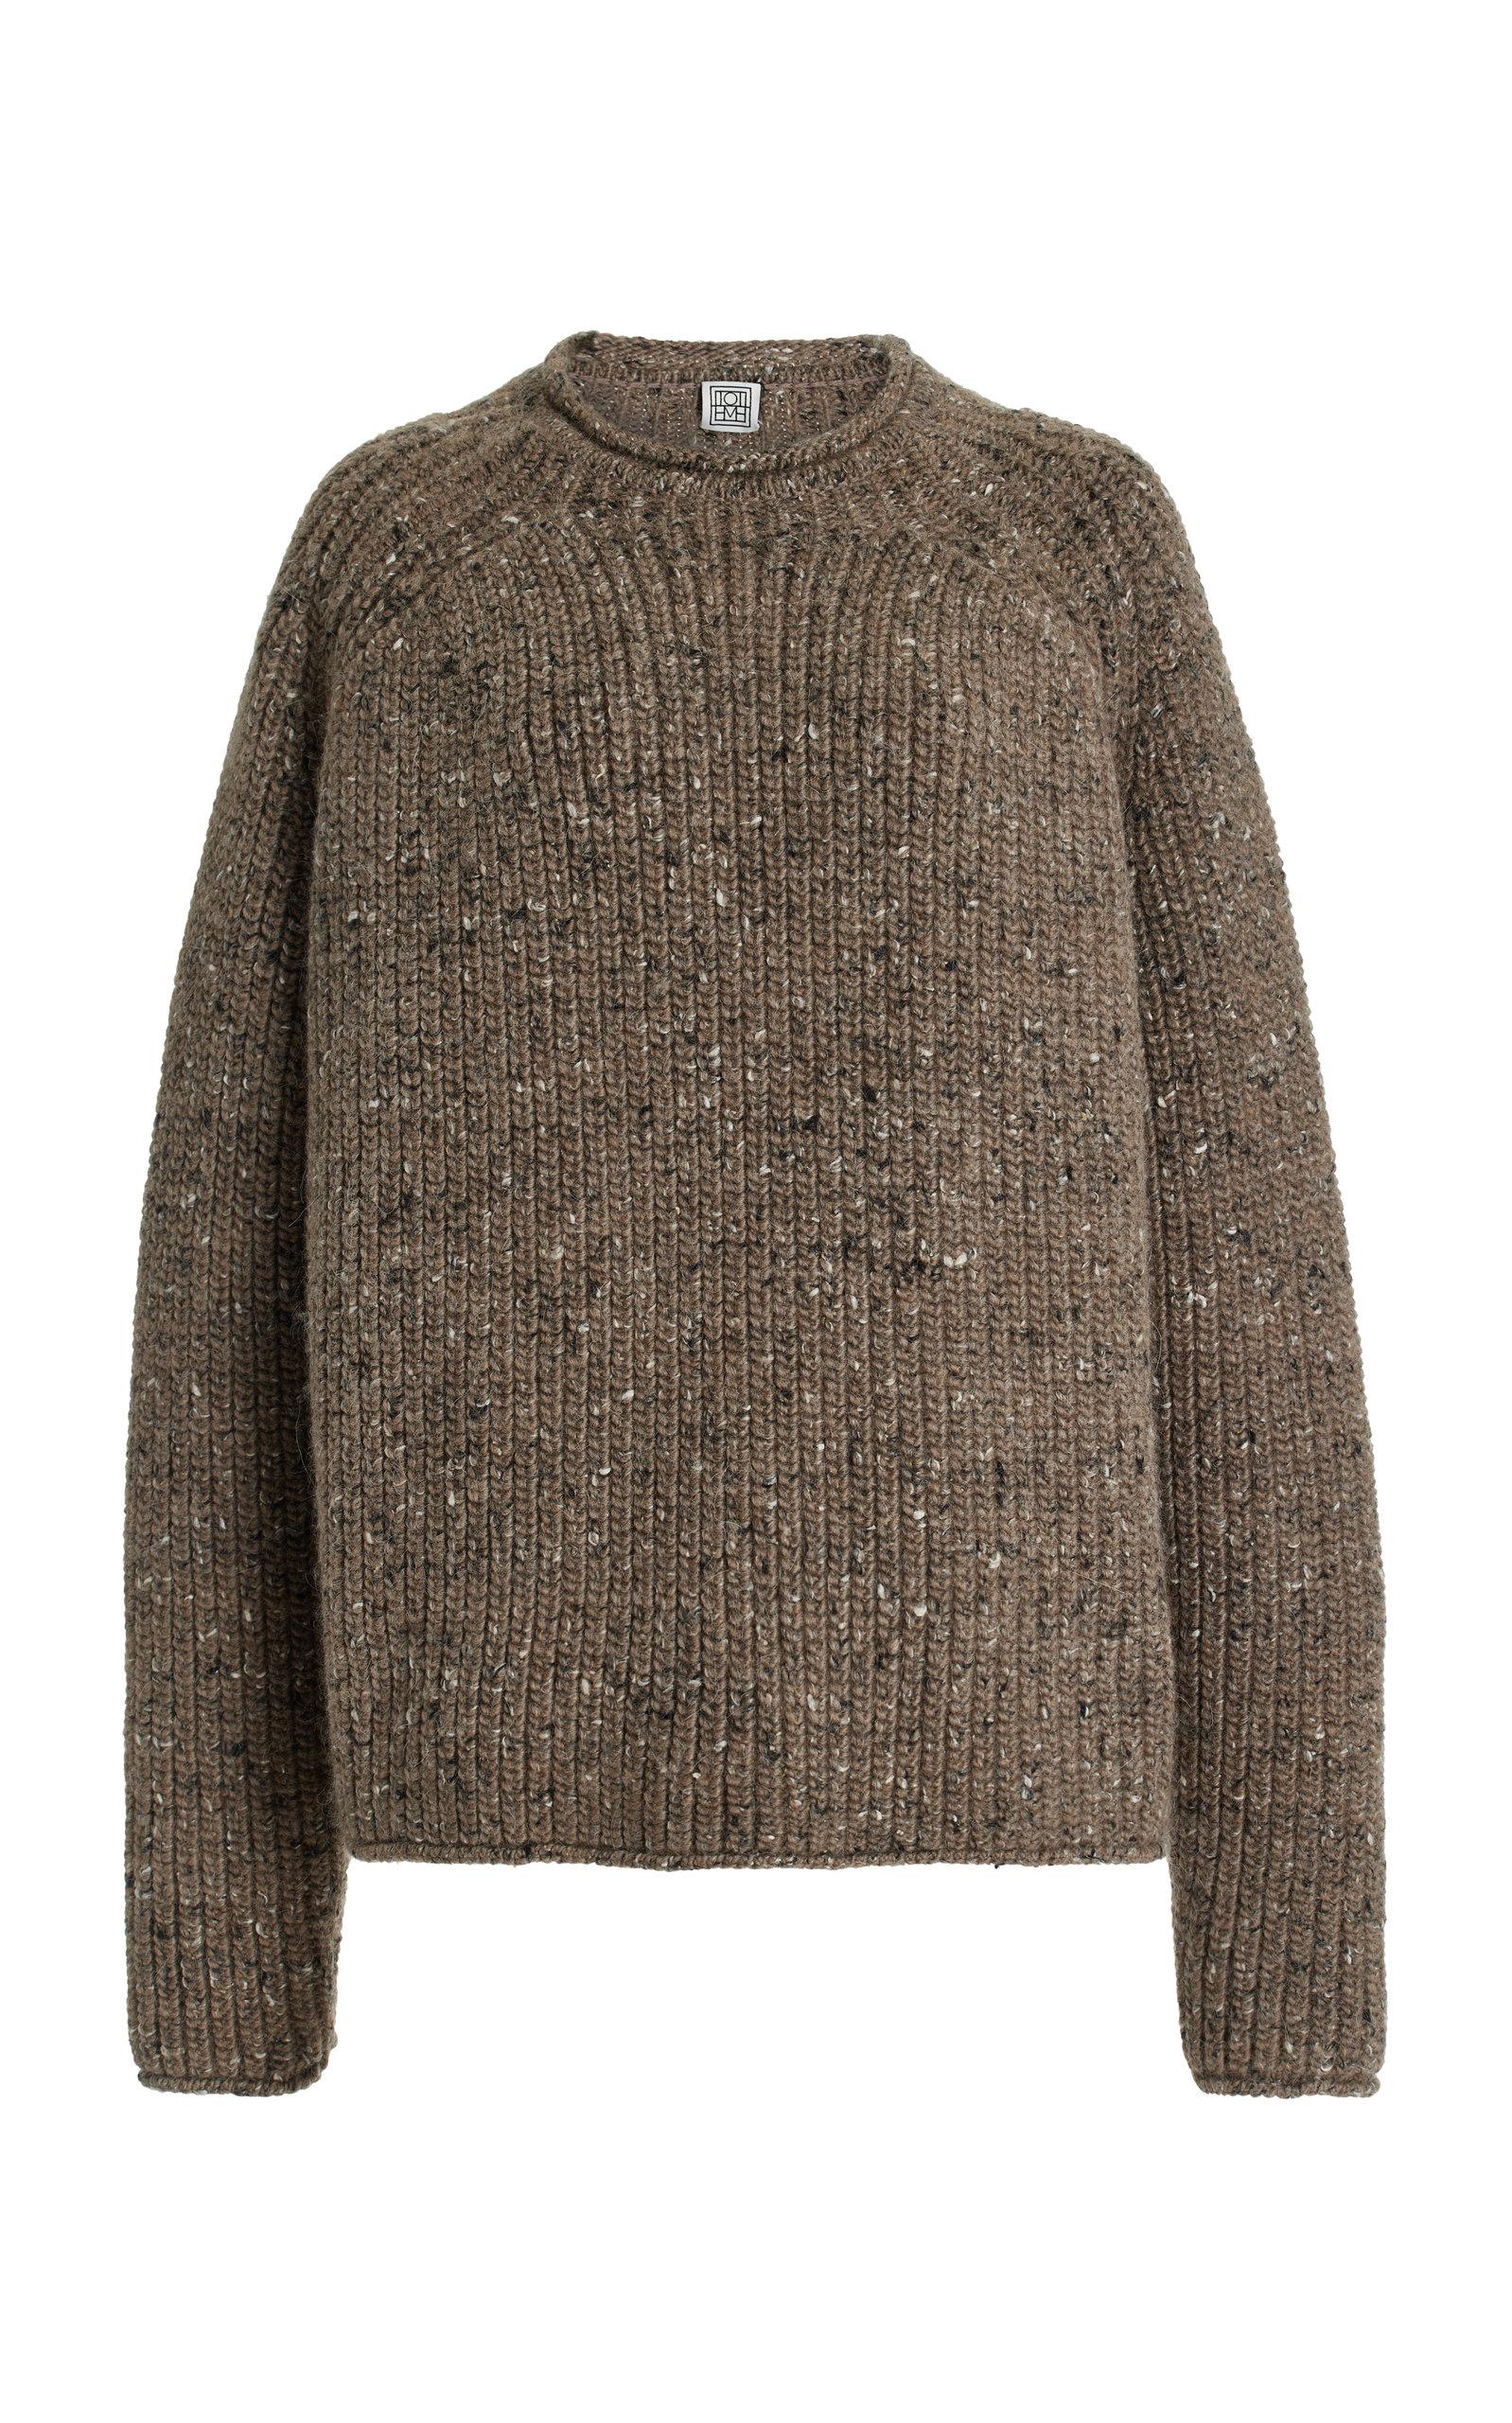 Totême Boxy Wool-blend Sweater in Brown | Lyst UK